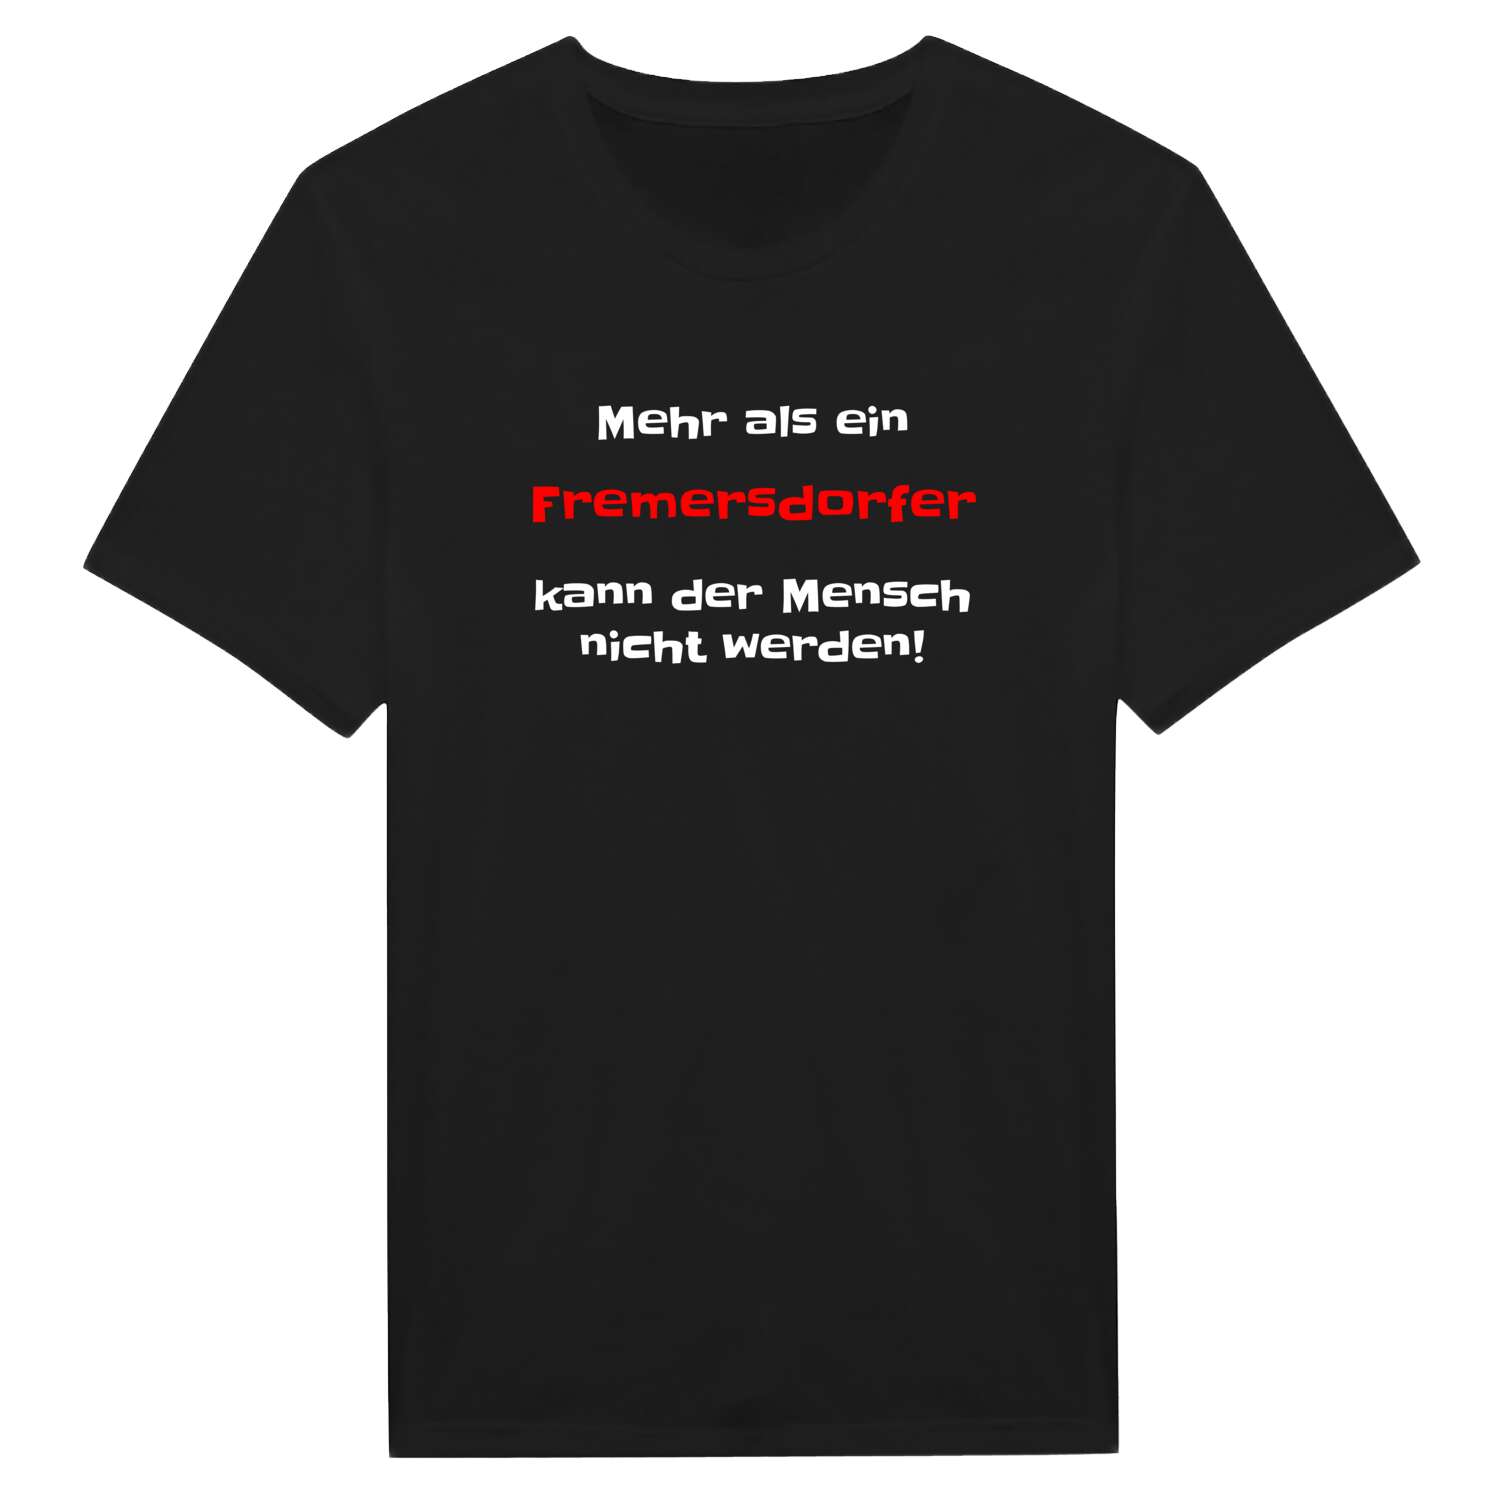 Fremersdorf T-Shirt »Mehr als ein«